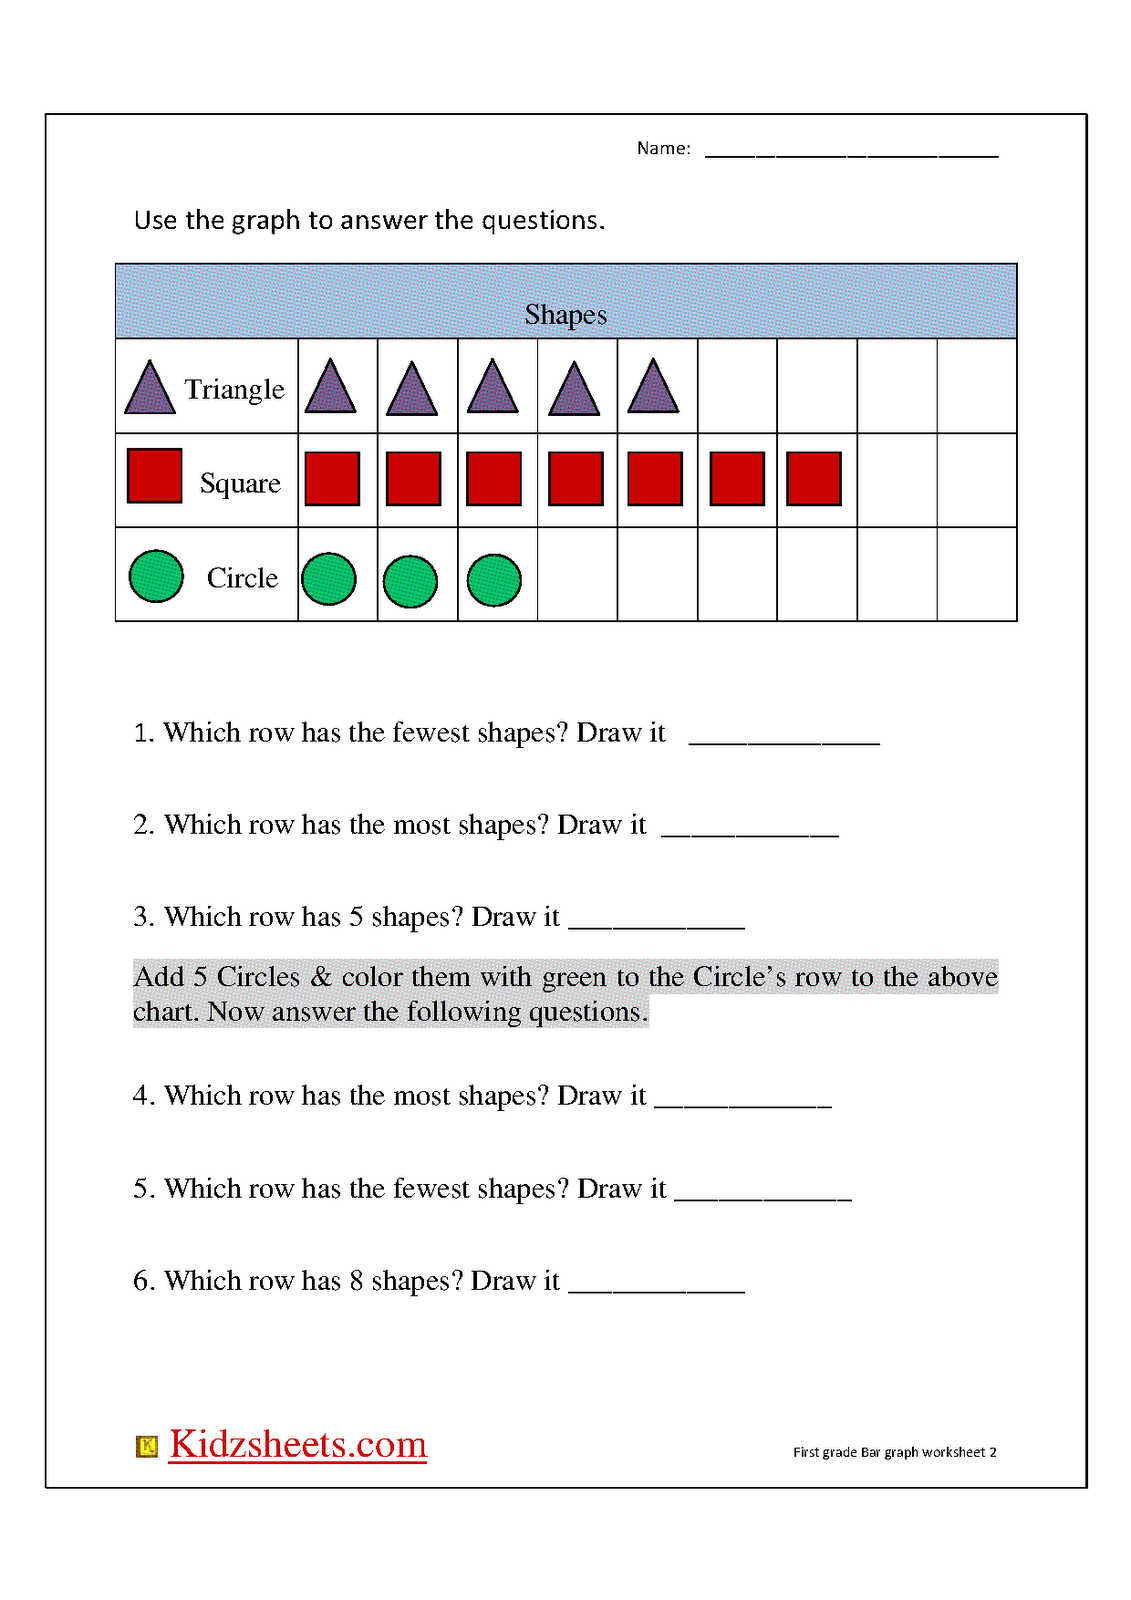 kidz-worksheets-first-grade-bar-graph2